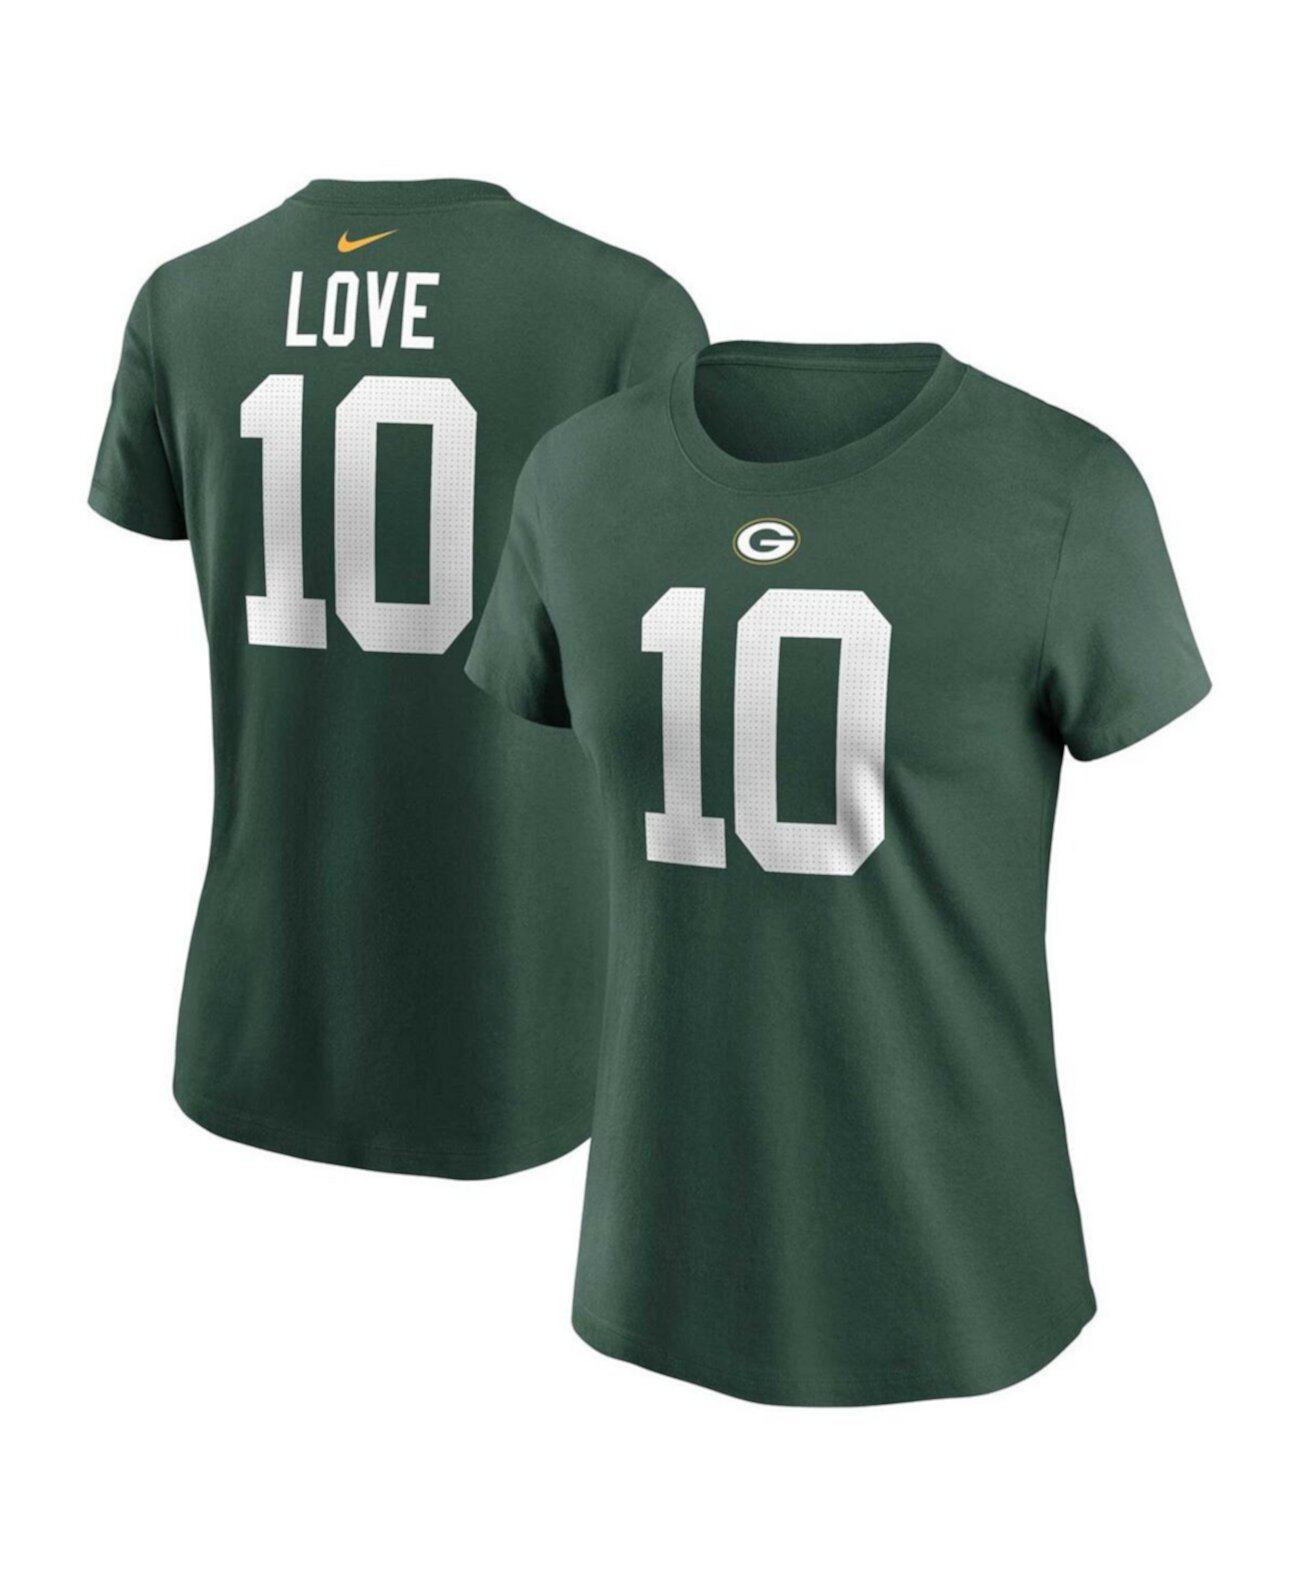 Женская футболка Jordan Love Green Green Bay Packers с именем и номером игрока Nike